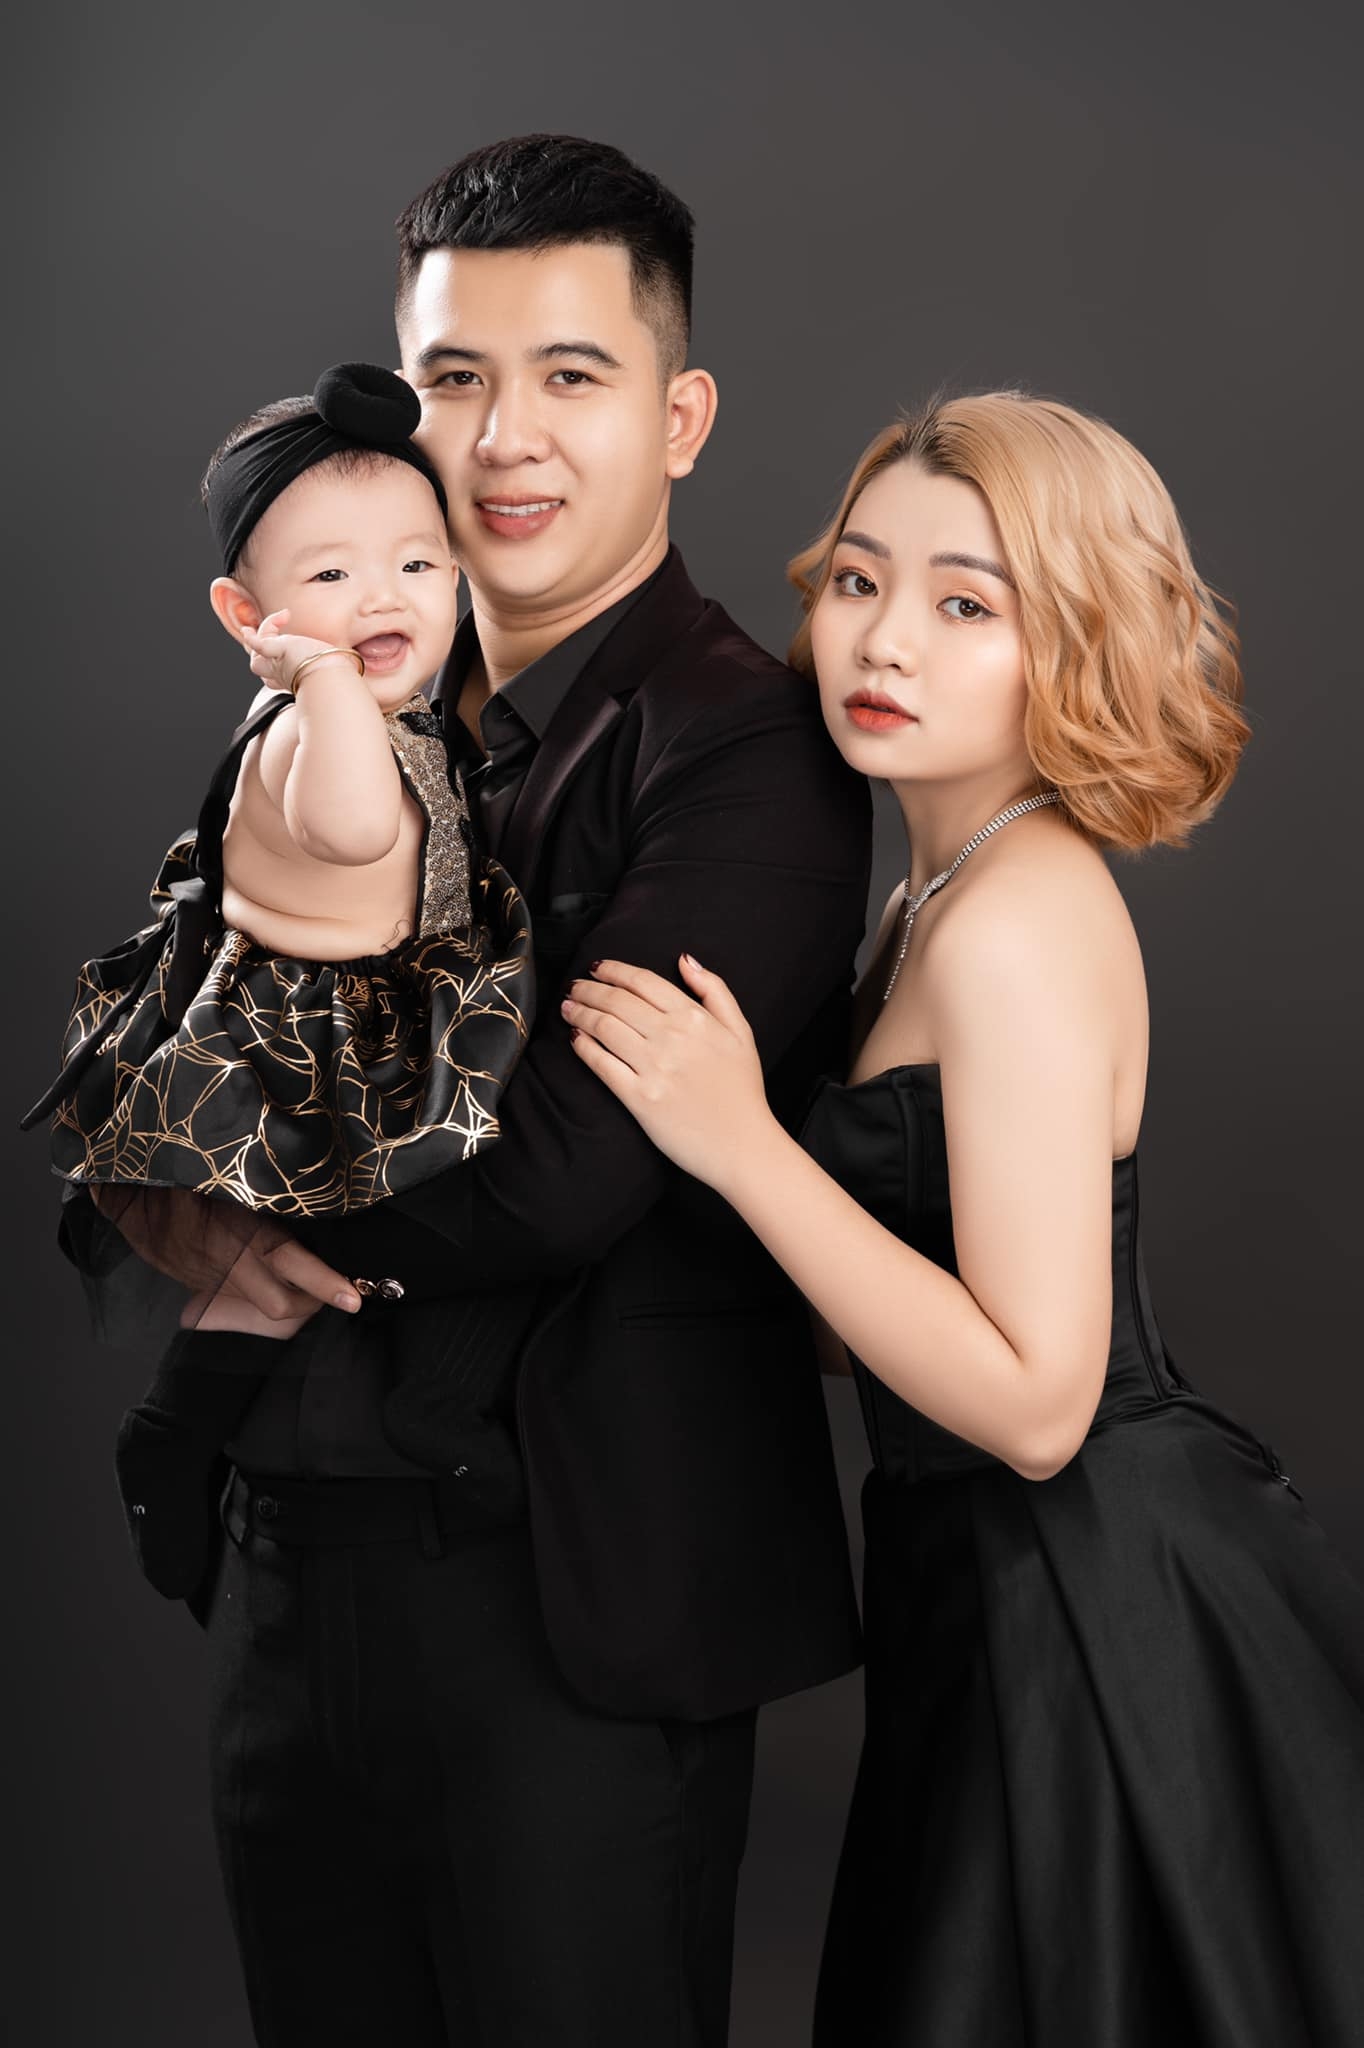 Anh gia dinh 3 1 - 35 cách tạo dáng chụp ảnh gia đình 3 người đẹp nhất - HThao Studio